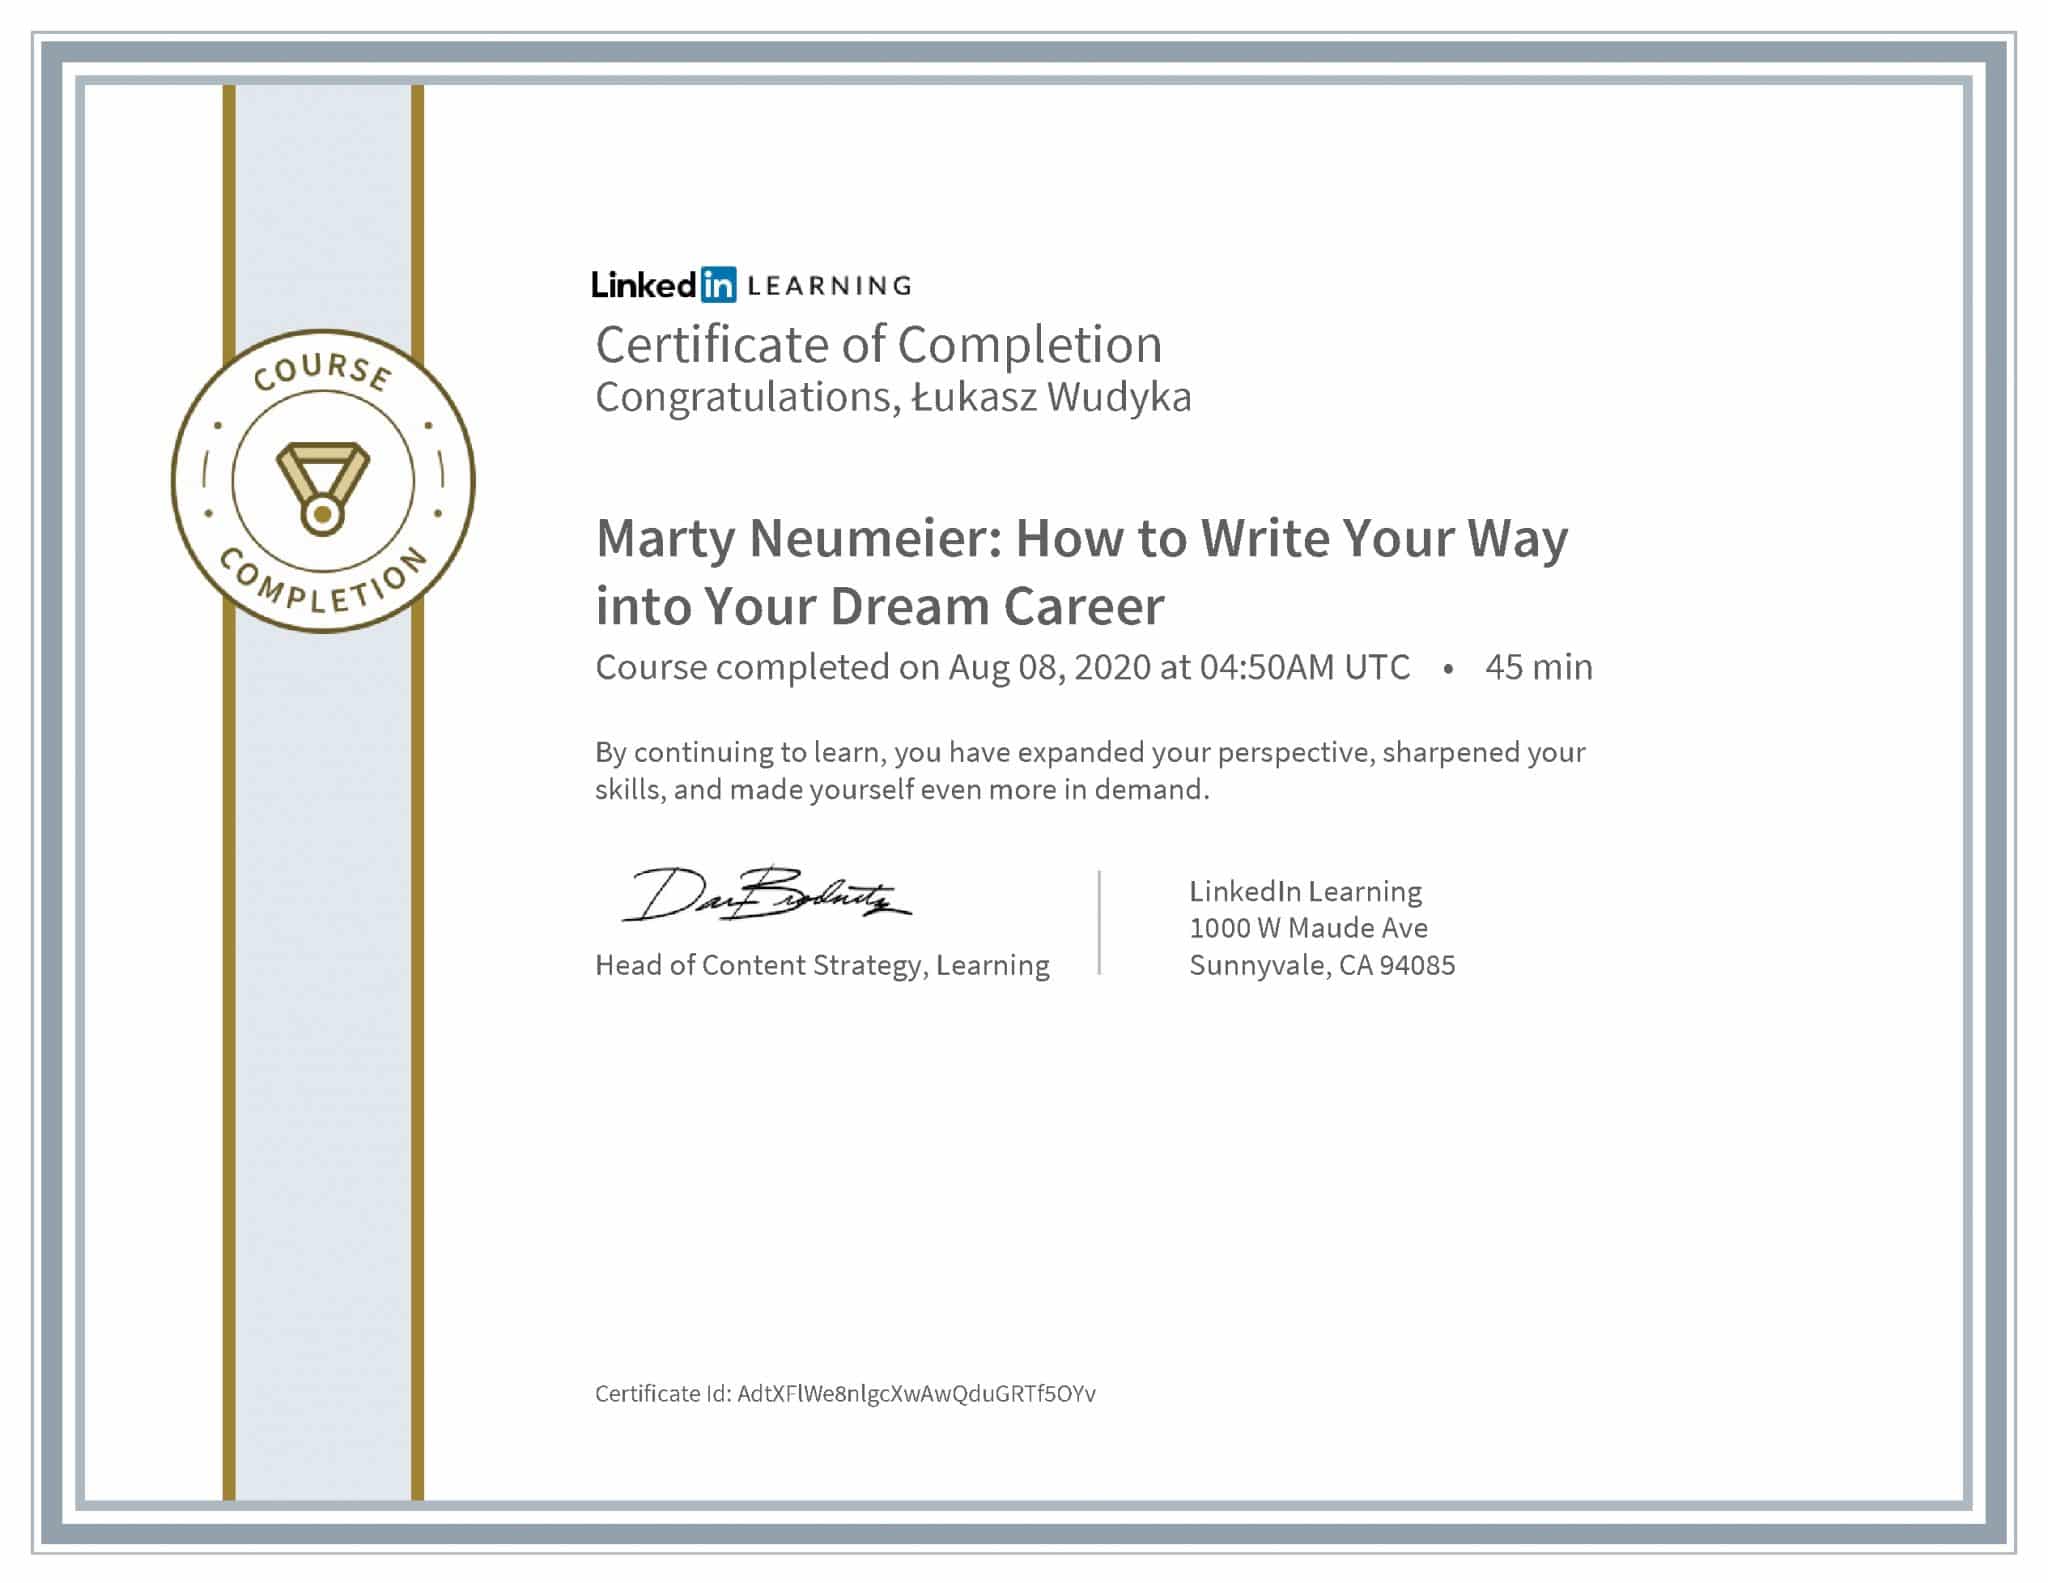 Łukasz Wudyka certyfikat LinkedIn Marty Neumeier: How to Write Your Way into Your Dream Career